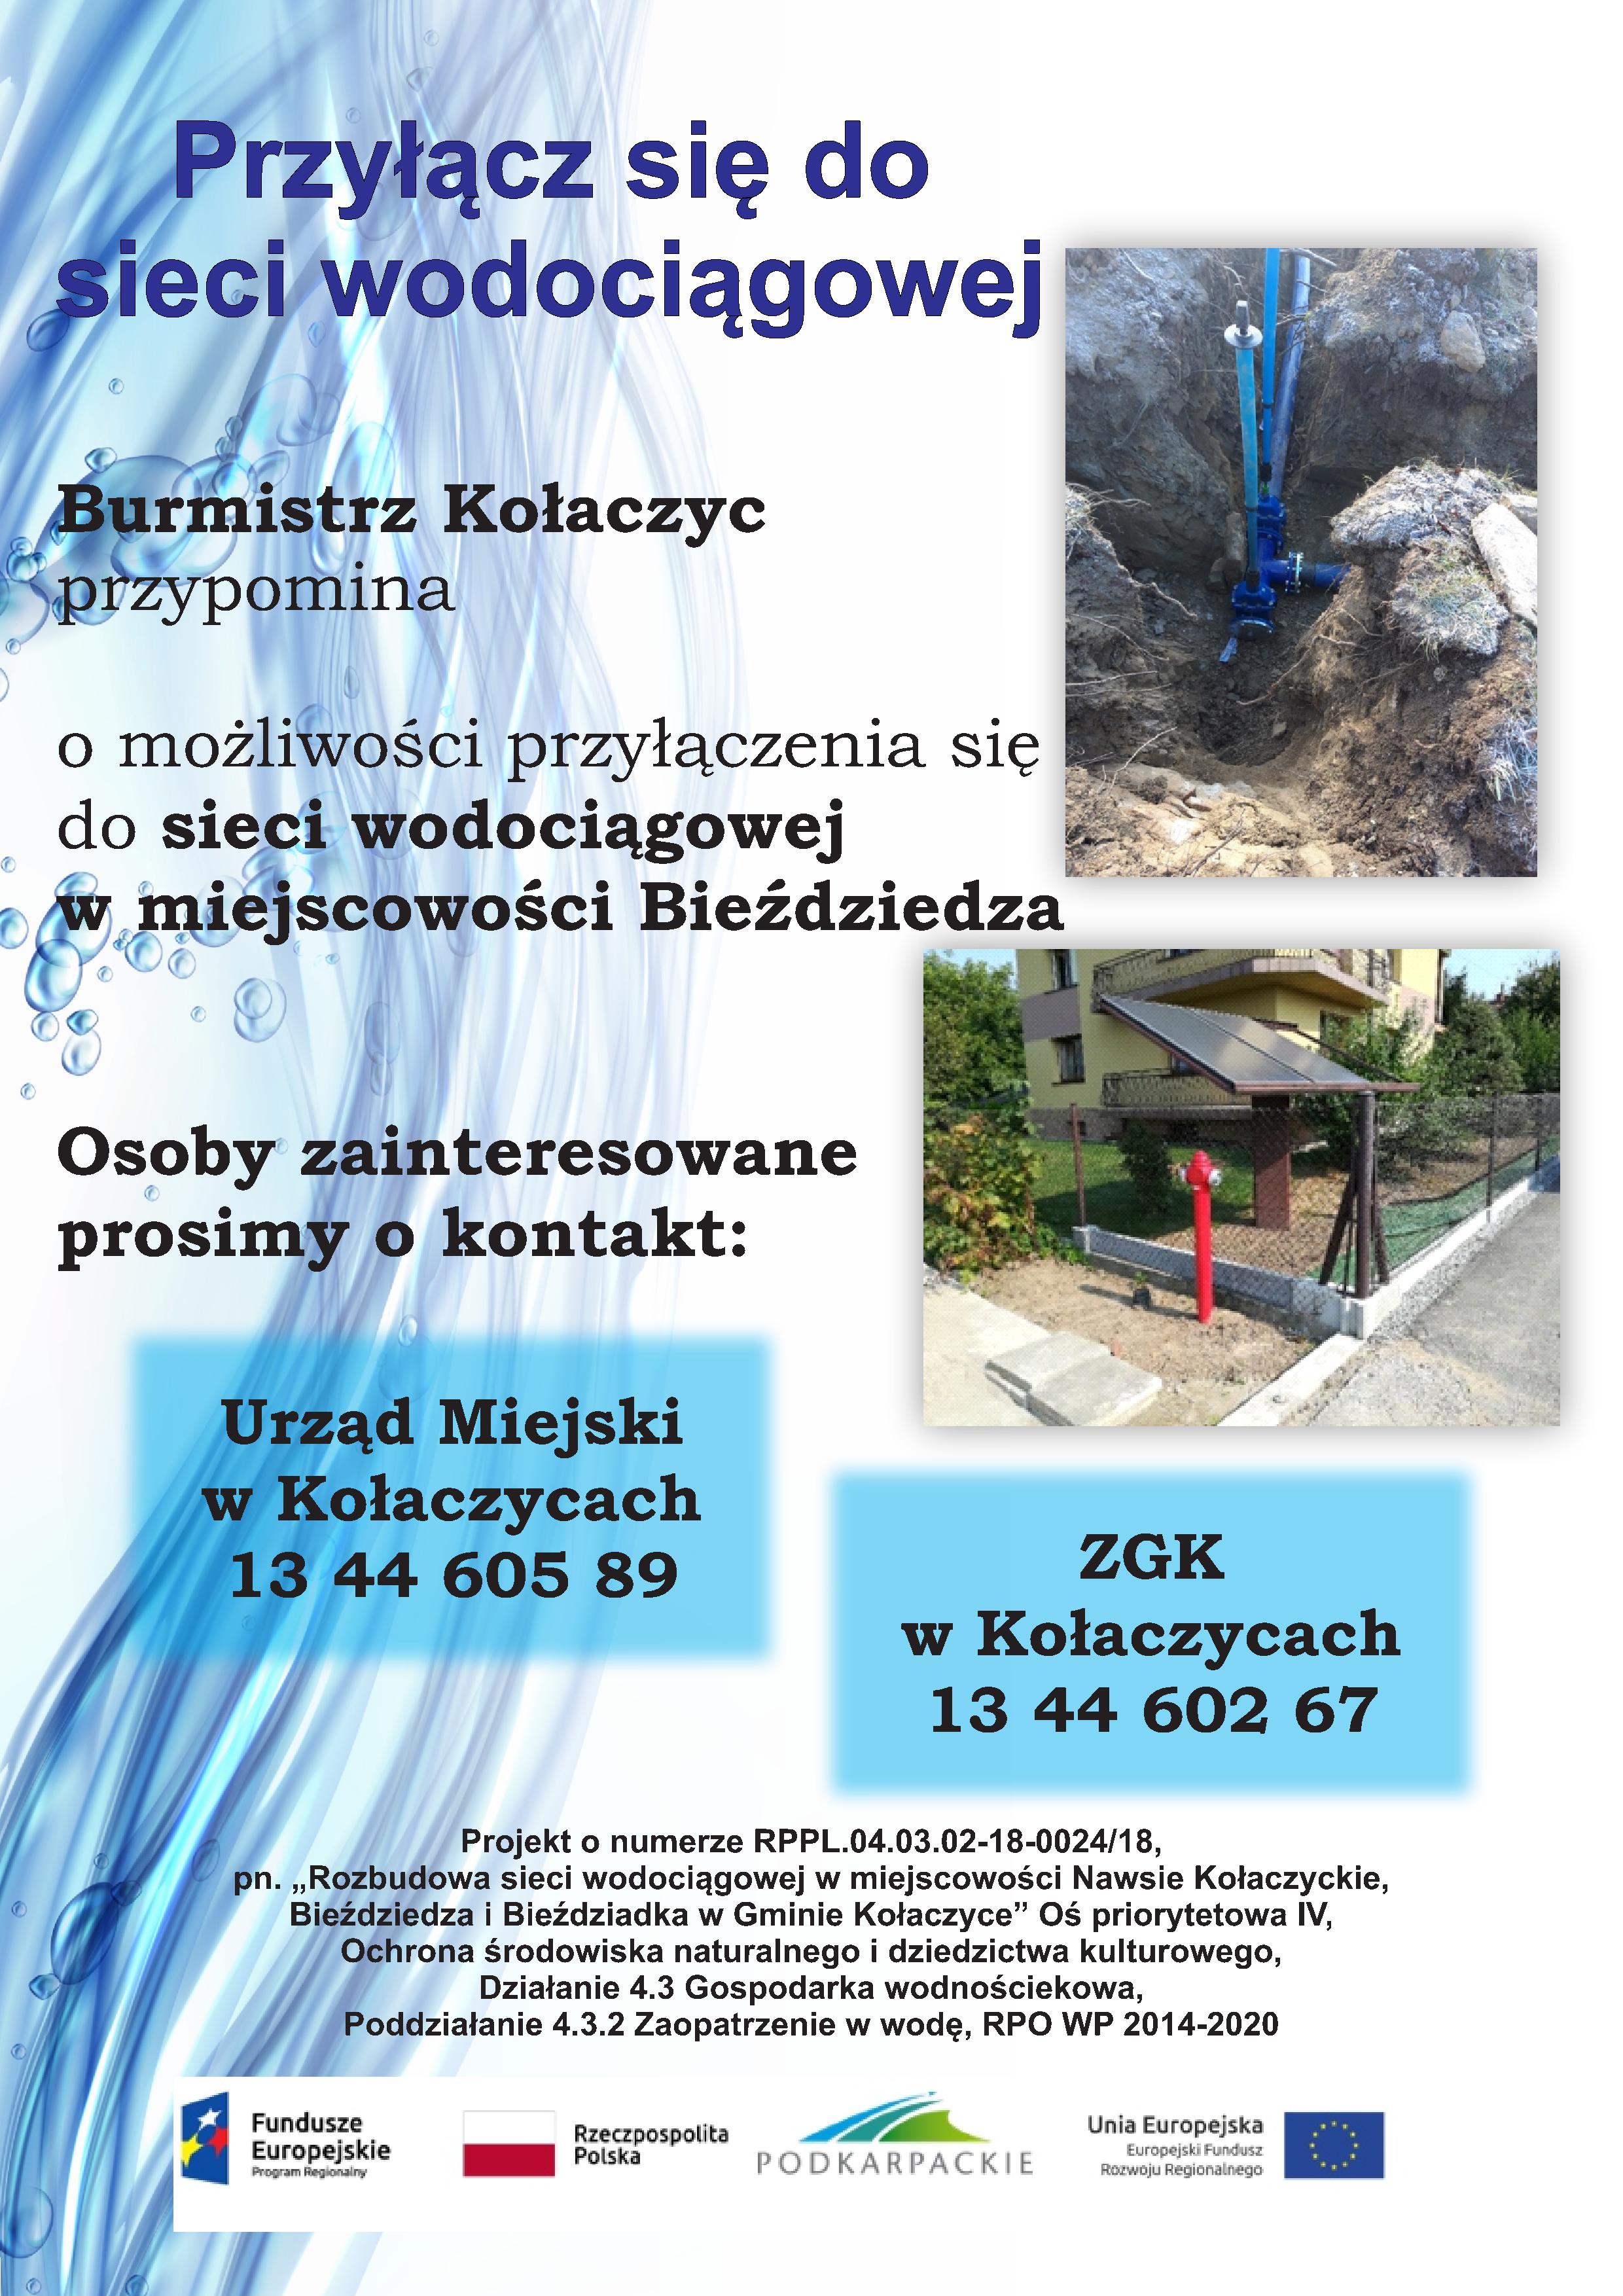 Plakat informujący się o możliwości przyłączenia się do sieci wodociągowej w Bieździedzy